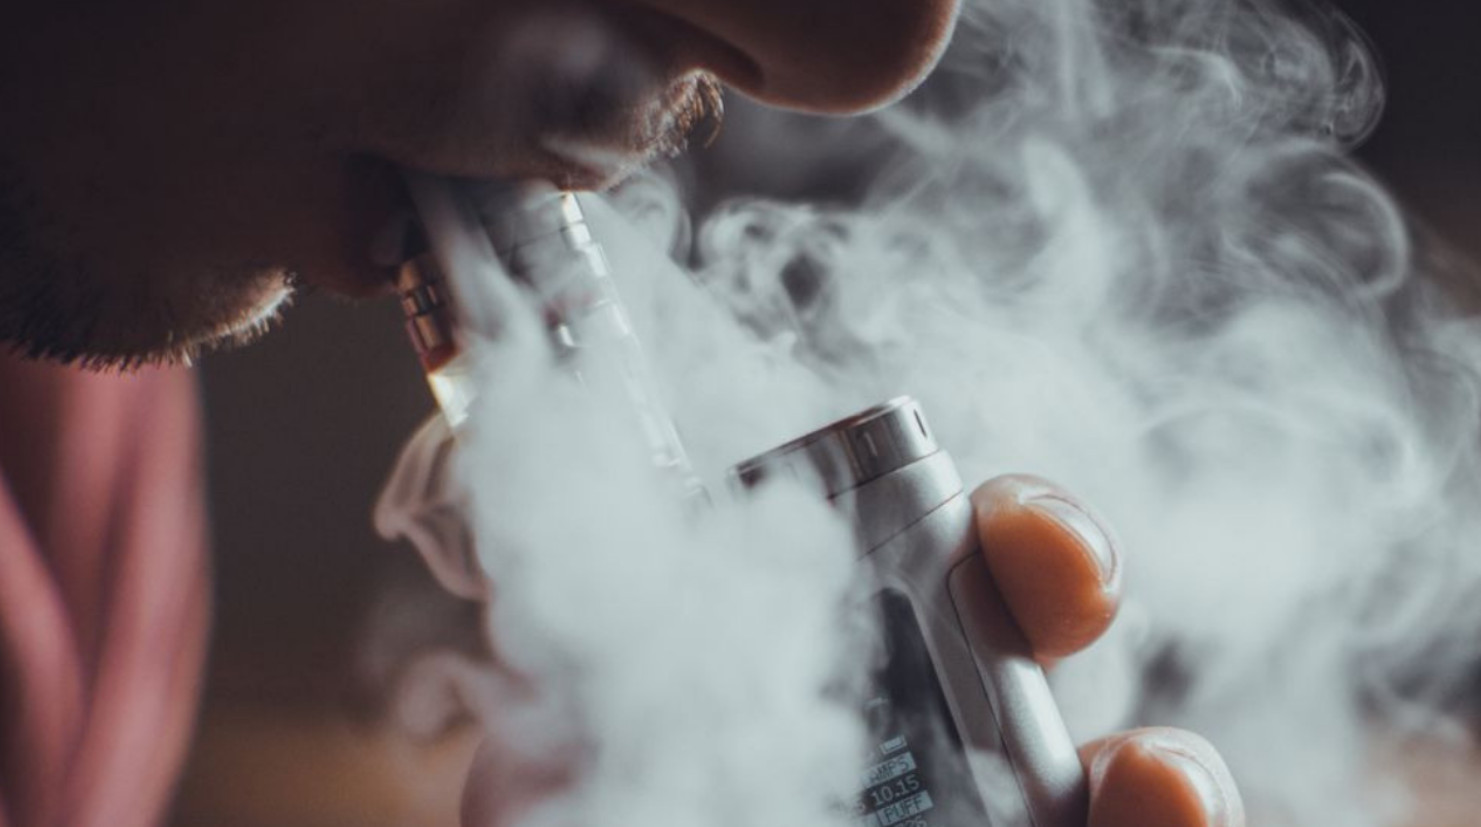 Các sản phẩm thuốc lá thế hệ mới đều có chứa thành phần hóa chất rất độc hại cho sức khoẻ. Ảnh: Sohu.